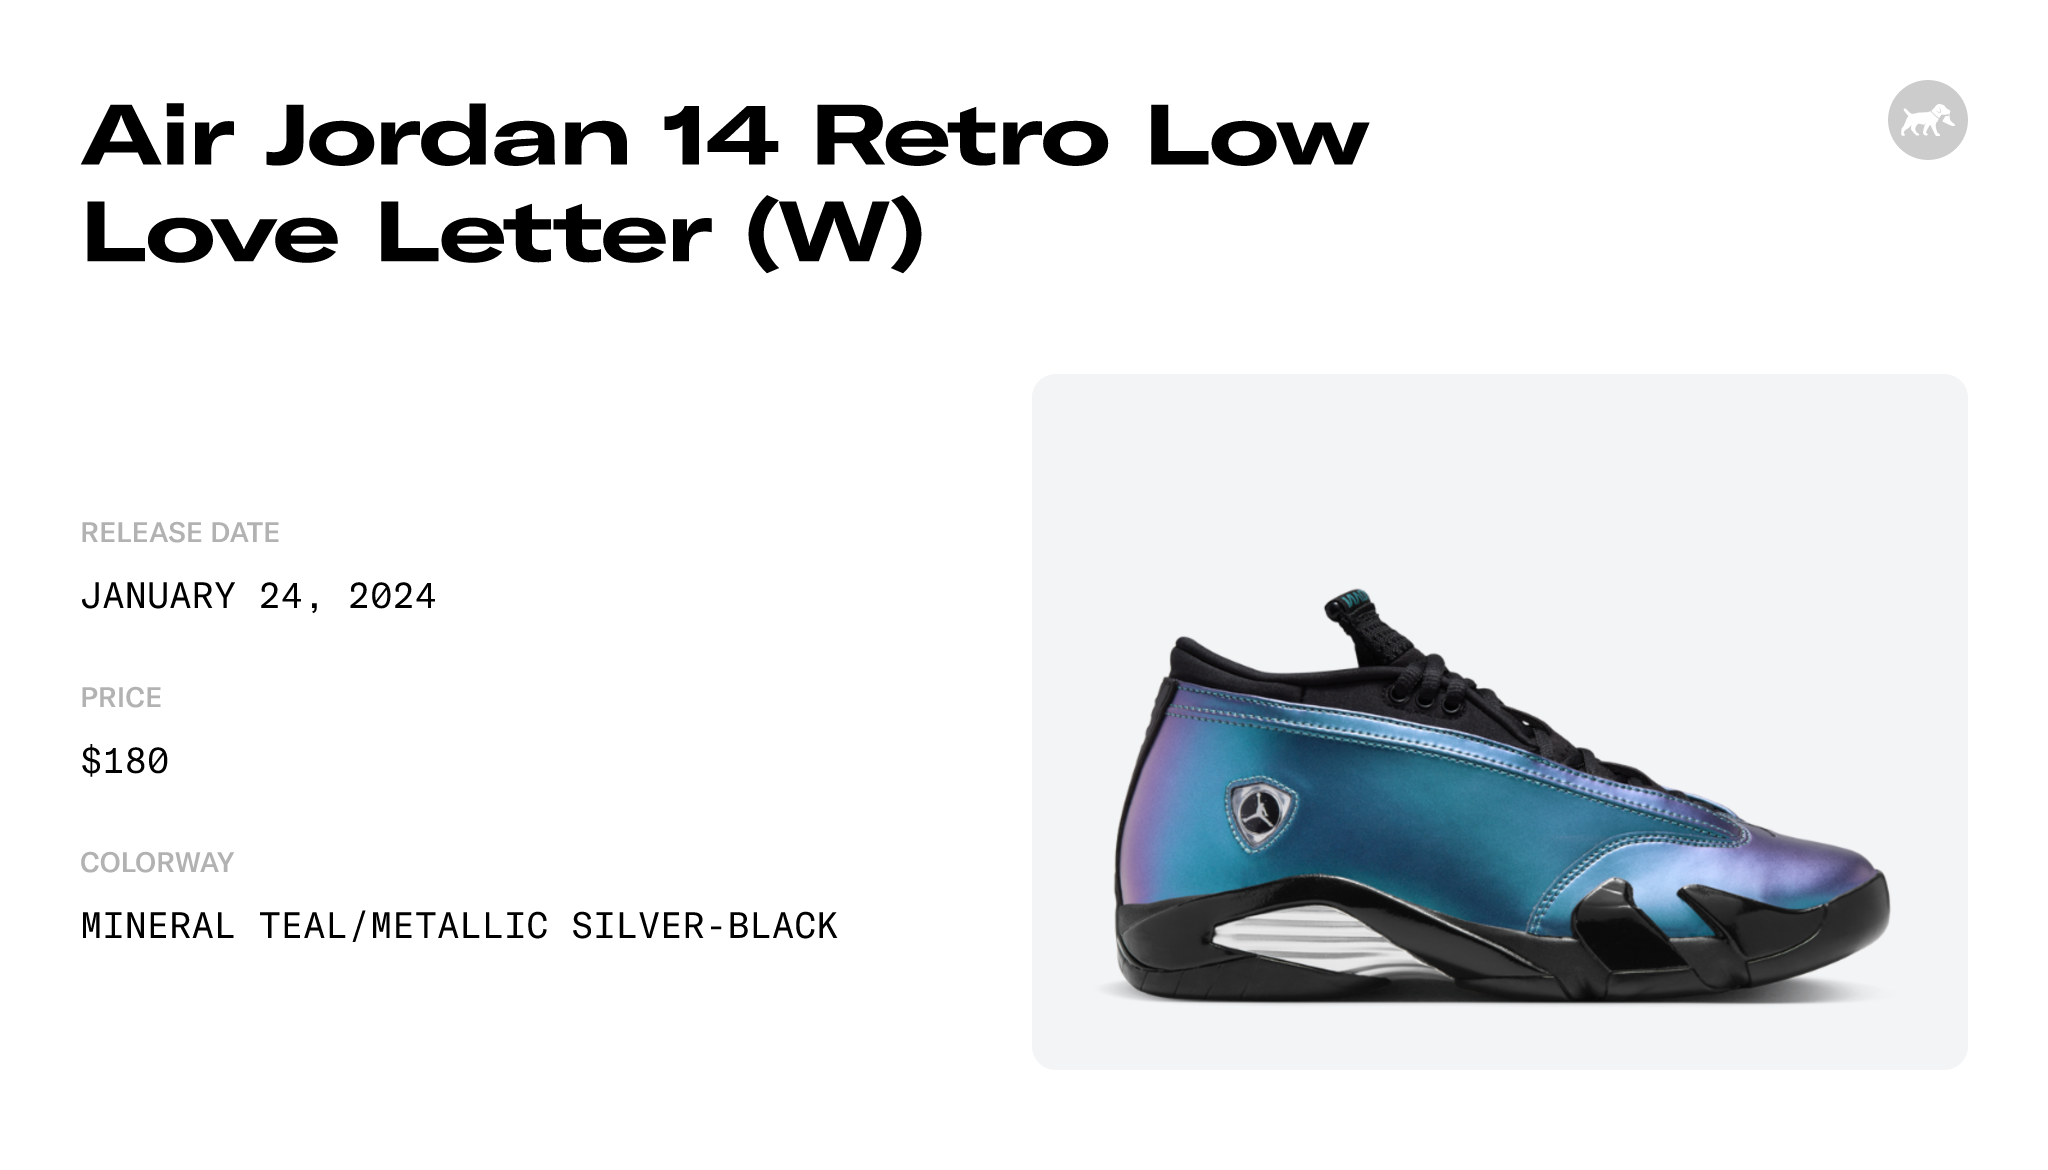 Air Jordan 14 Retro Low Mineral Teal (W) Raffles and Release Date